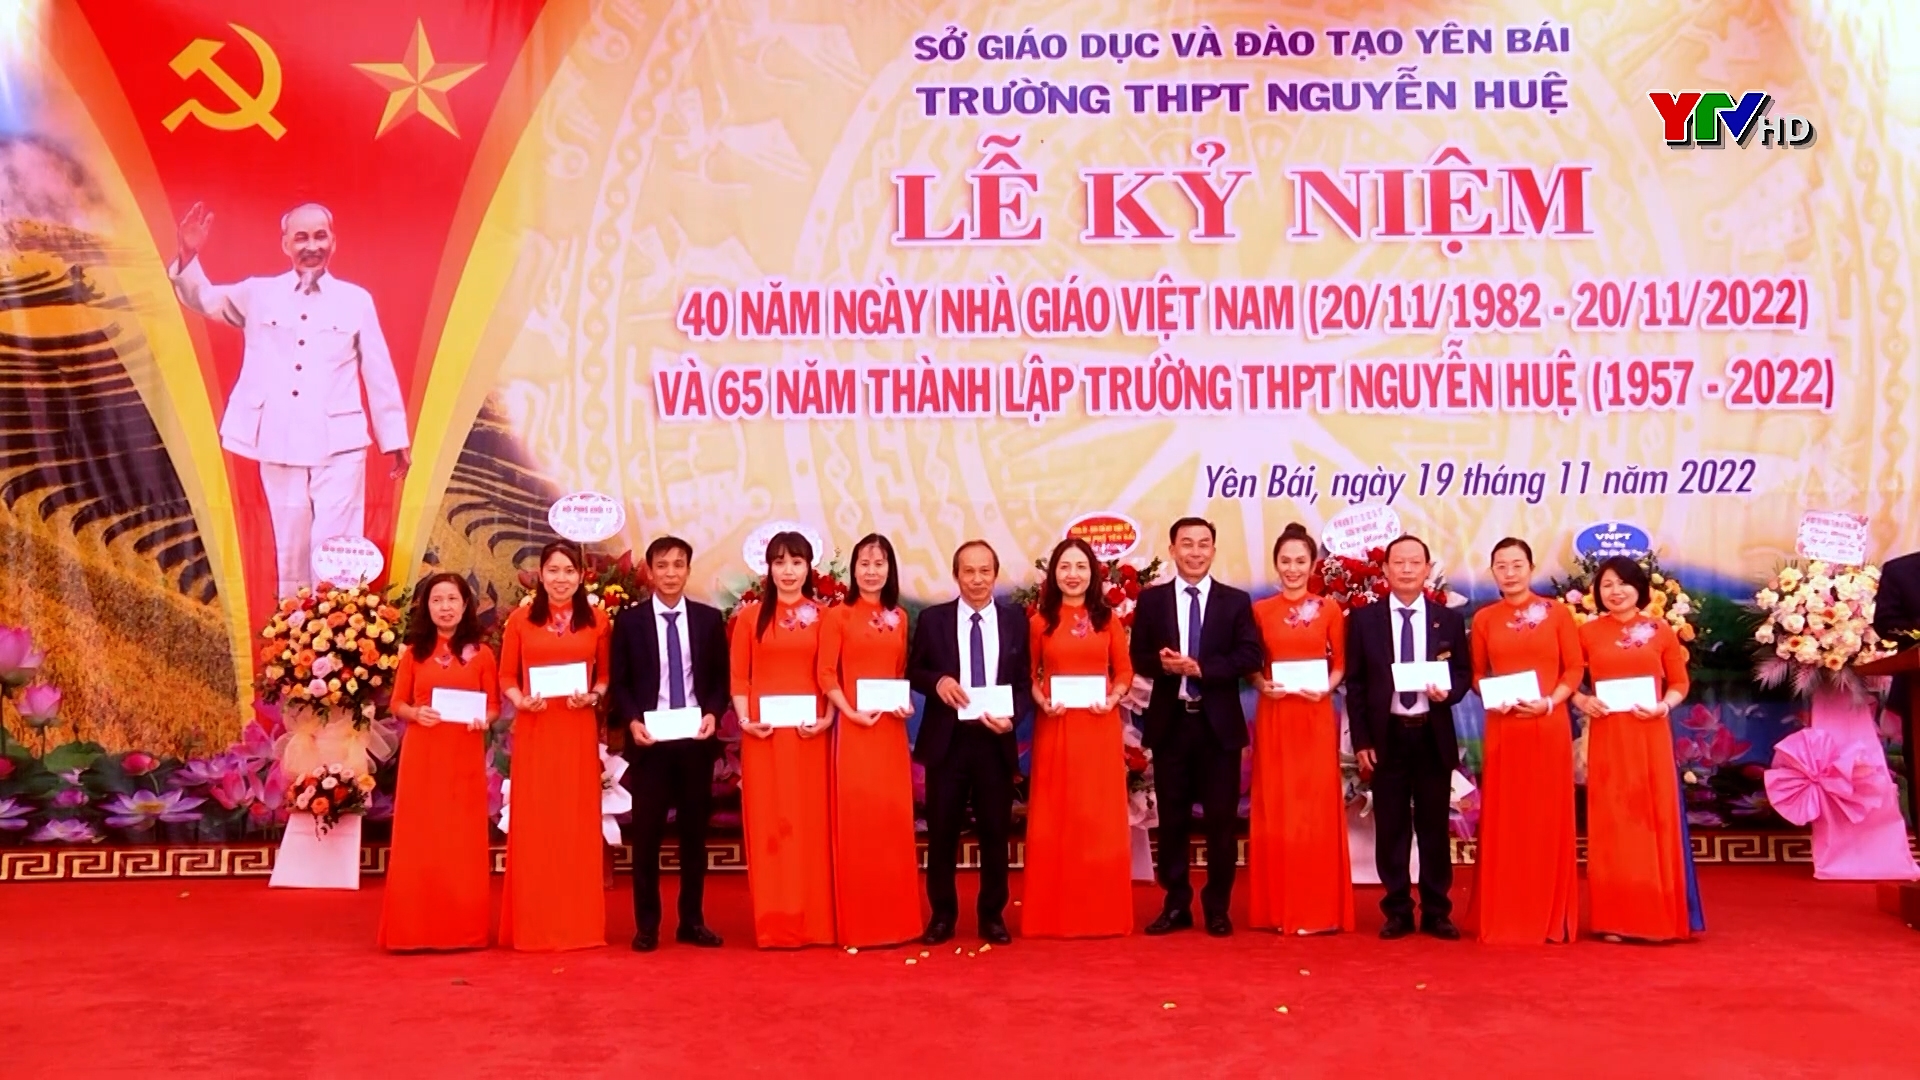 Trường THPT Nguyễn Huệ (TP Yên Bái) kỷ niệm 40 năm Ngày Nhà giáo Việt Nam